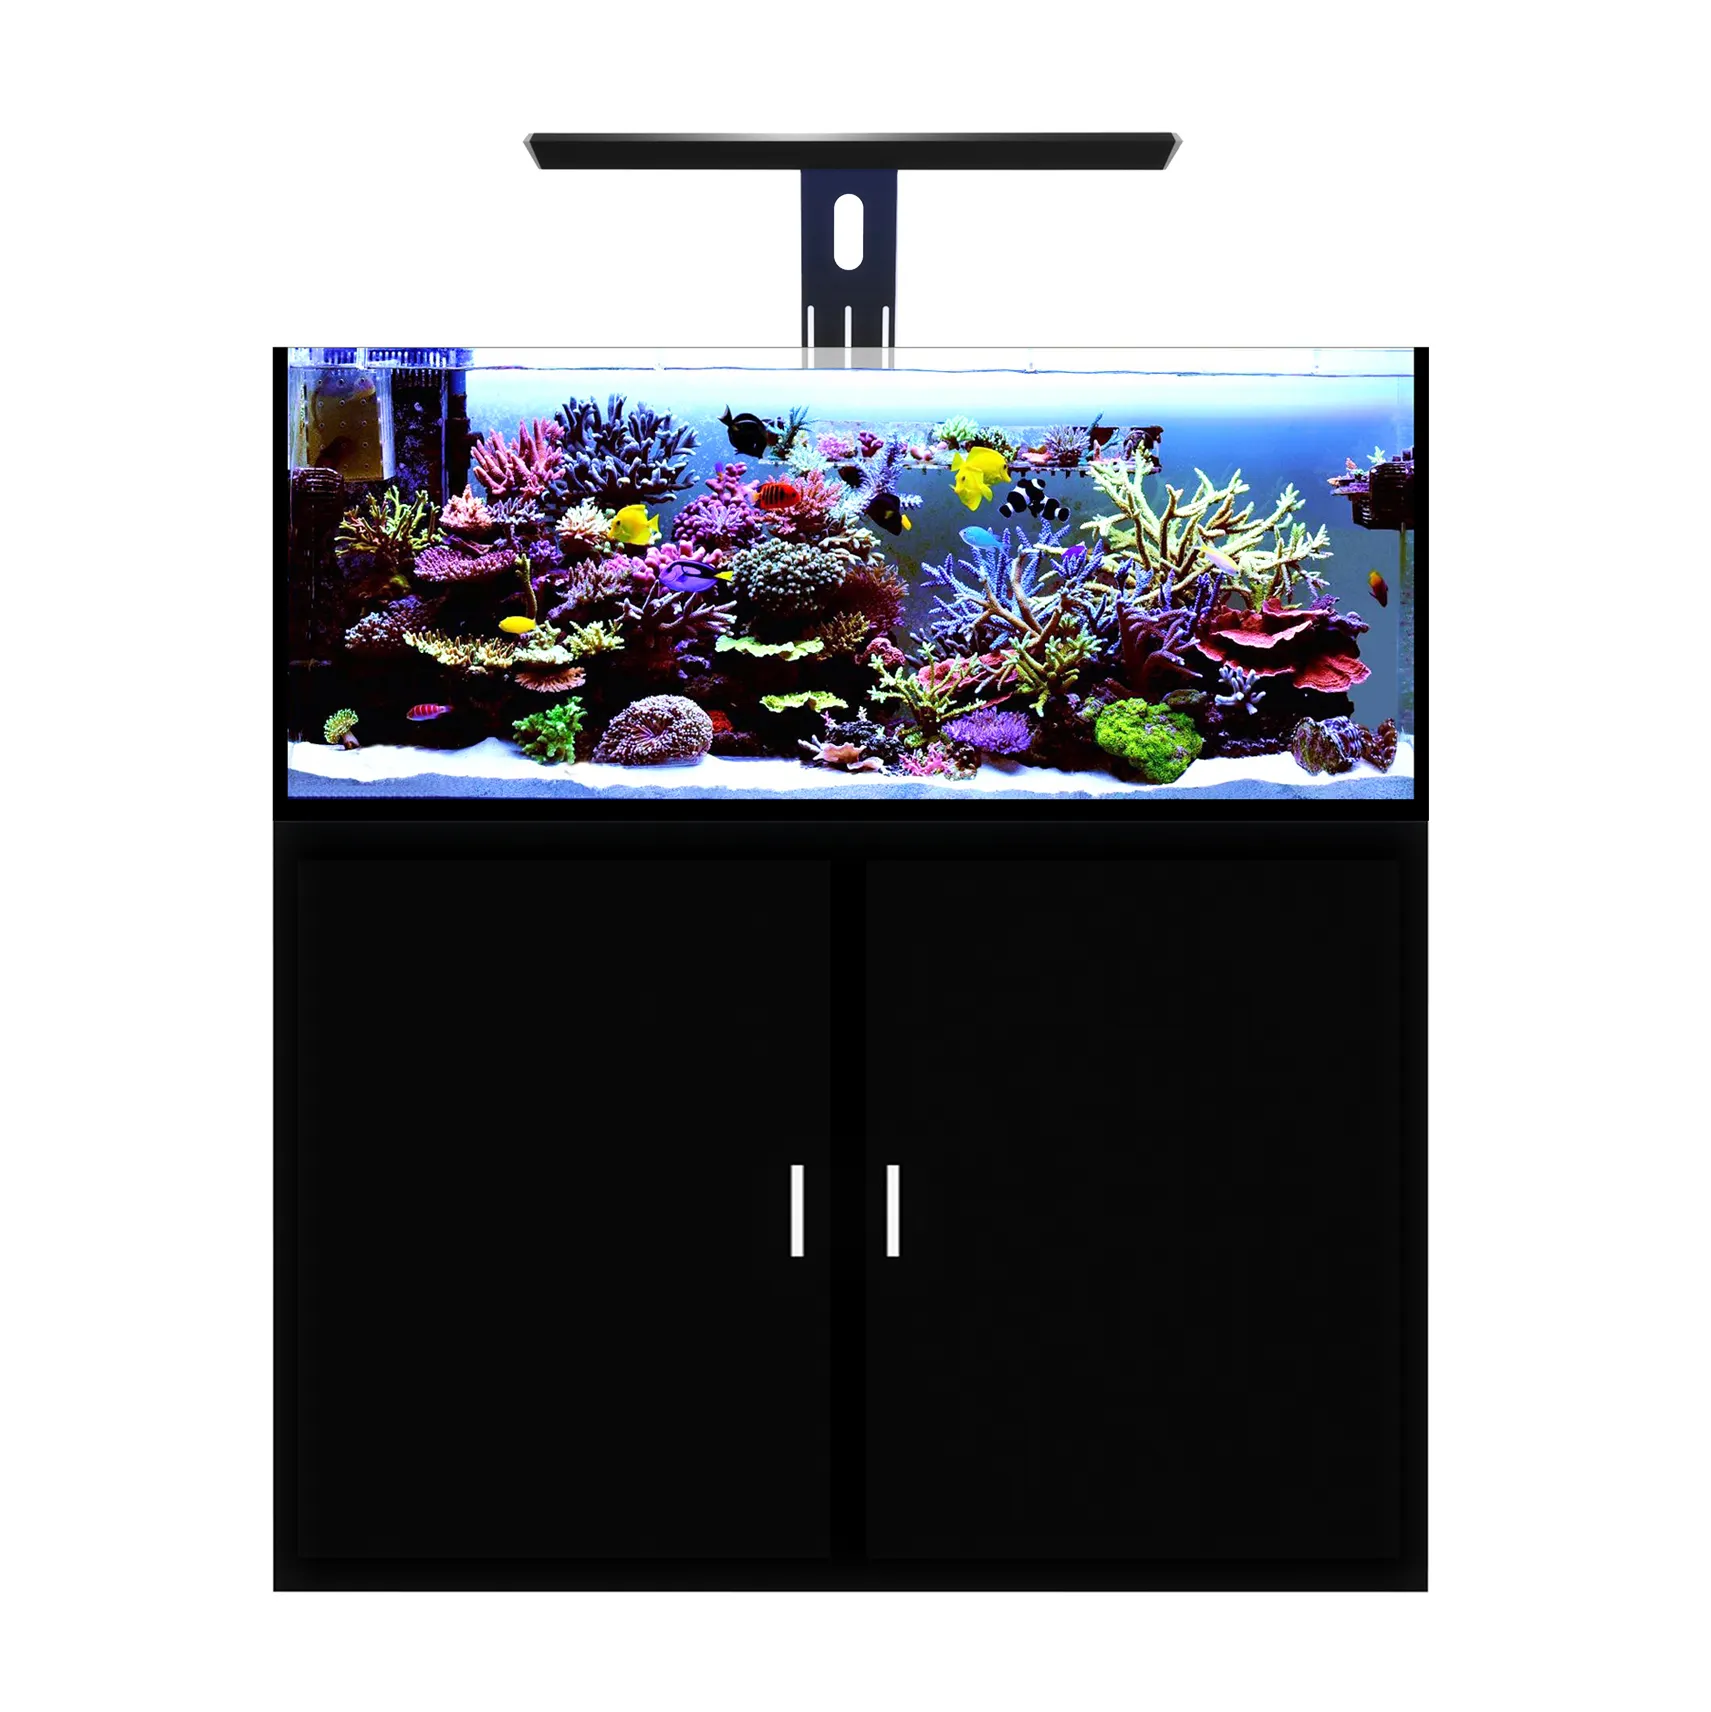 MICMOL-حار بيع ثور برو شاشة ليد بطيف كامل إضاءة المربى المائي 180W مهنيا للشعاب المرجانية SPS LPS البحرية الأسماك